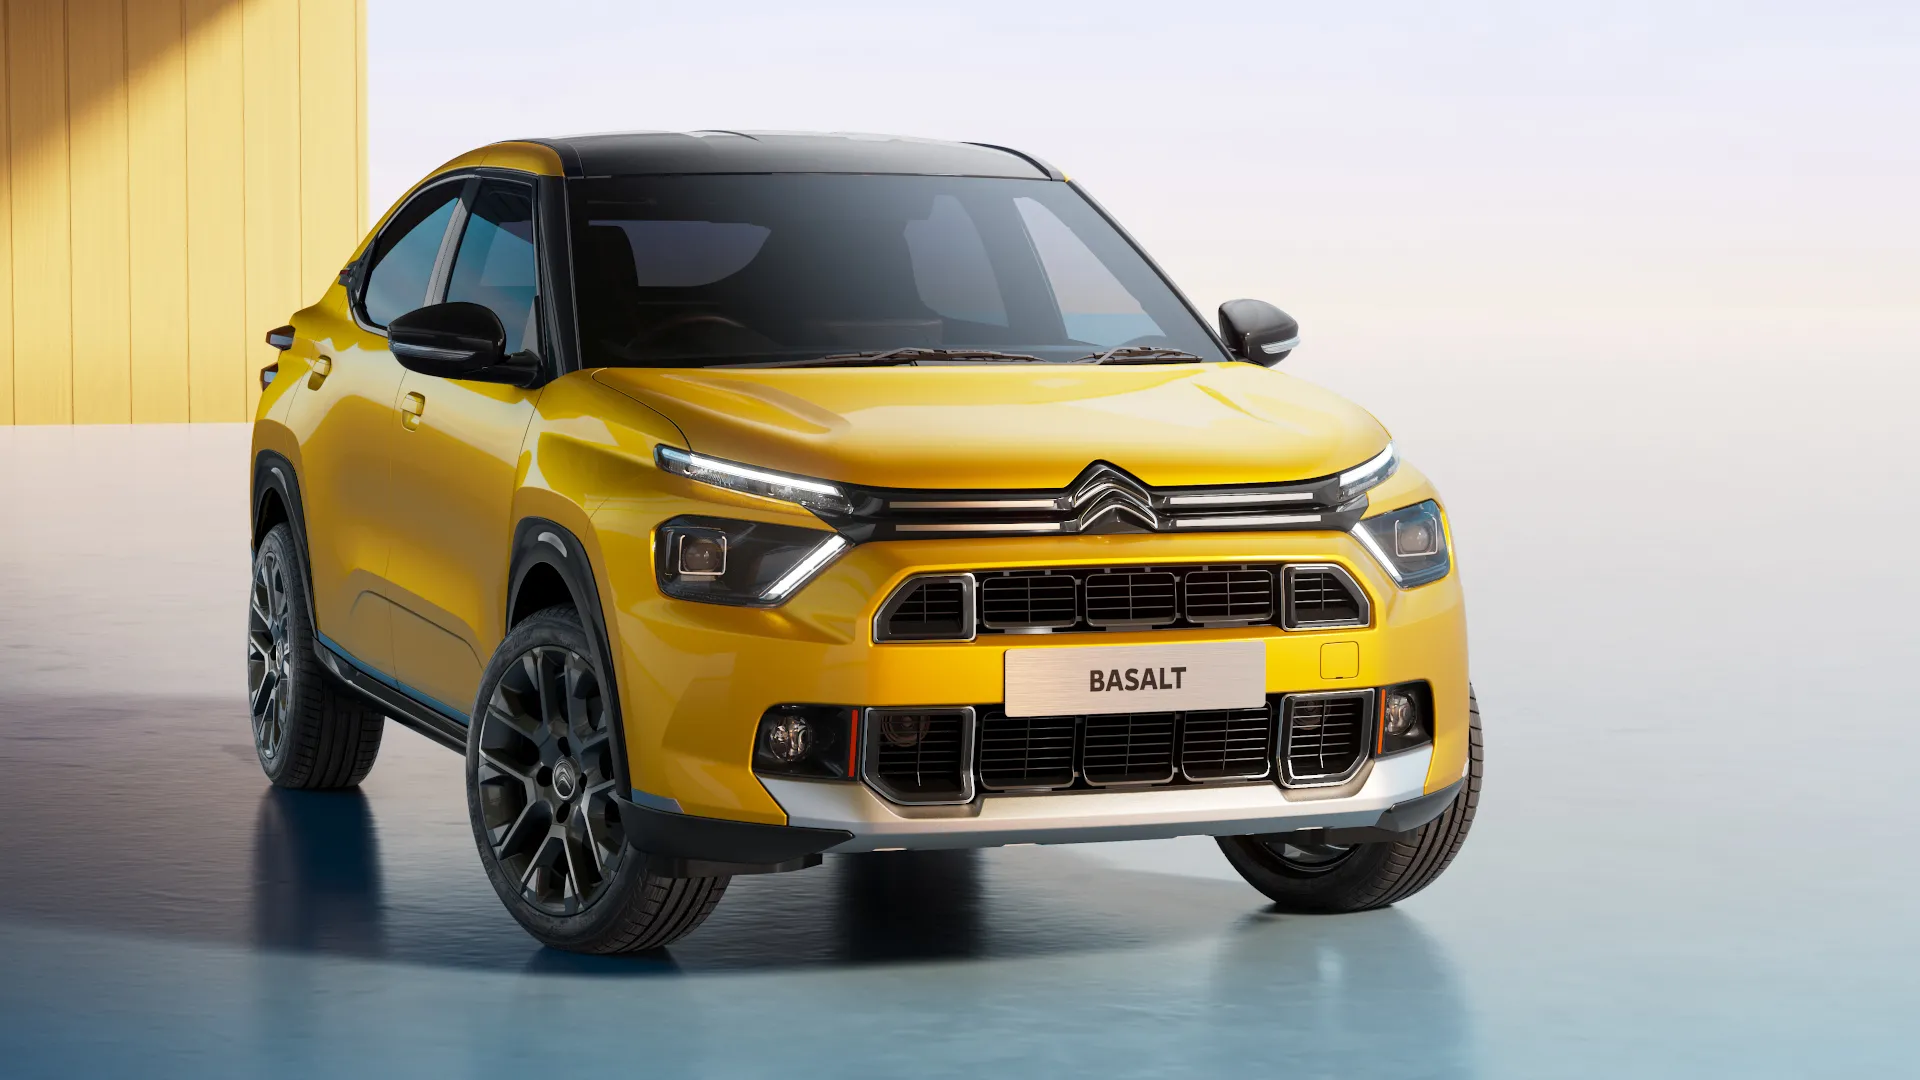 El Citroën Basalt adelante un nuevo SUV Coupé, pero no llegará a Europa